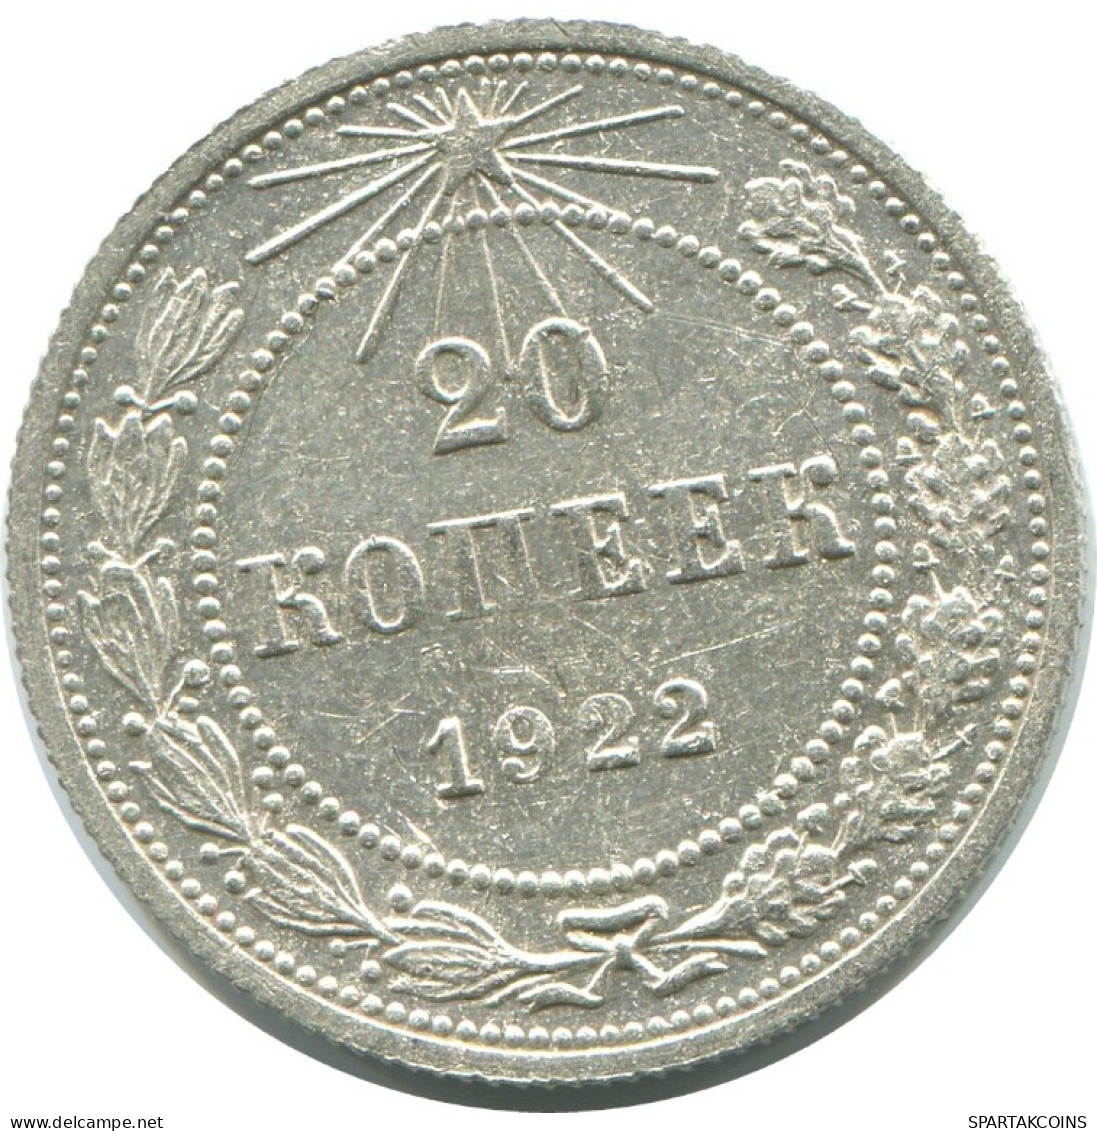 20 KOPEKS 1923 RUSSLAND RUSSIA RSFSR SILBER Münze HIGH GRADE #AF376.4.D.A - Russia